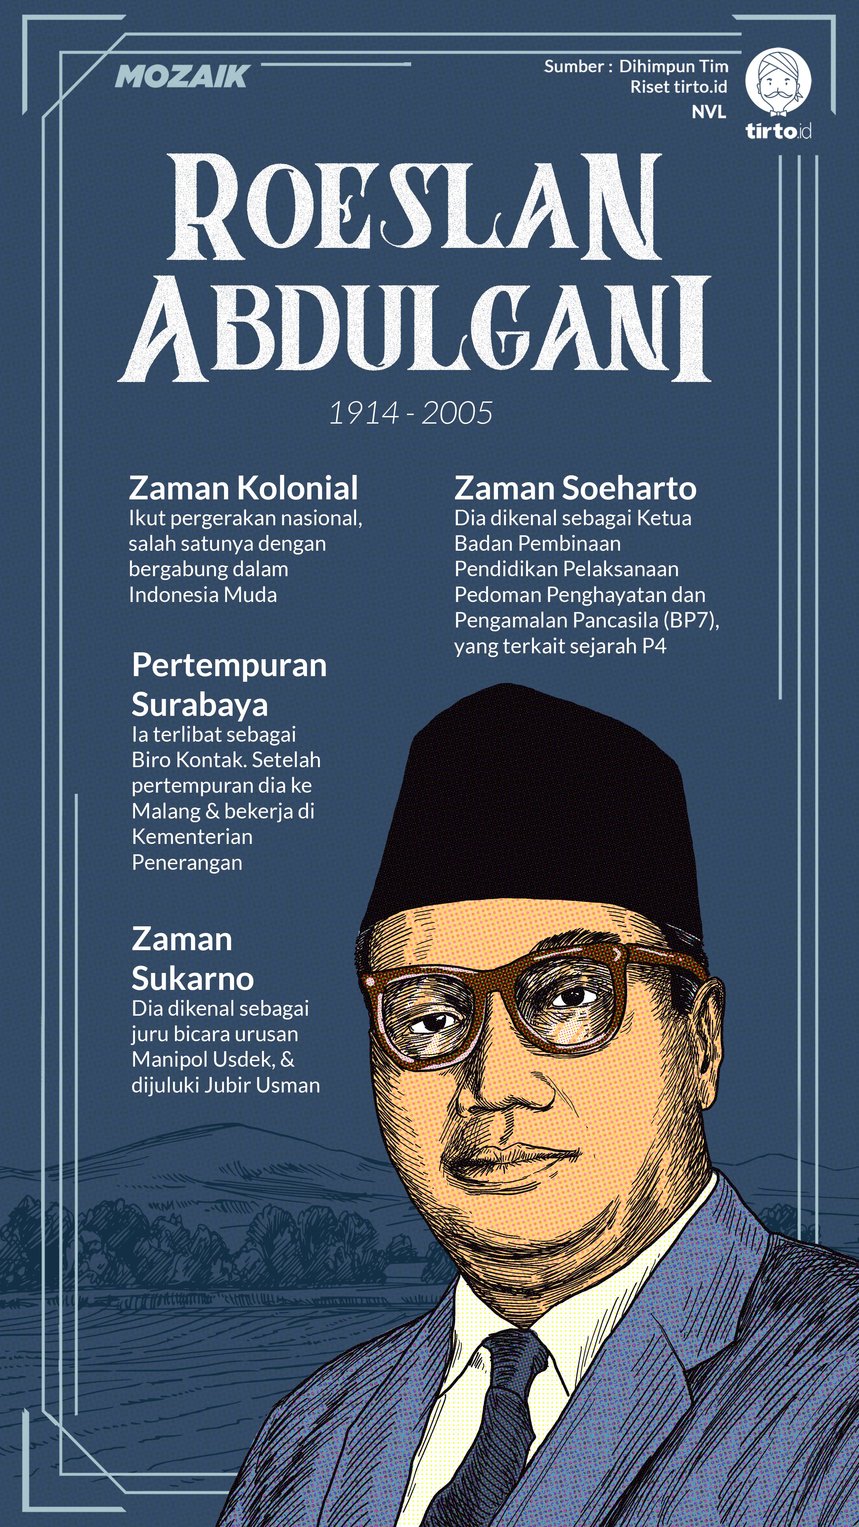 Infografik Mozaik Roeslan Abdulgani